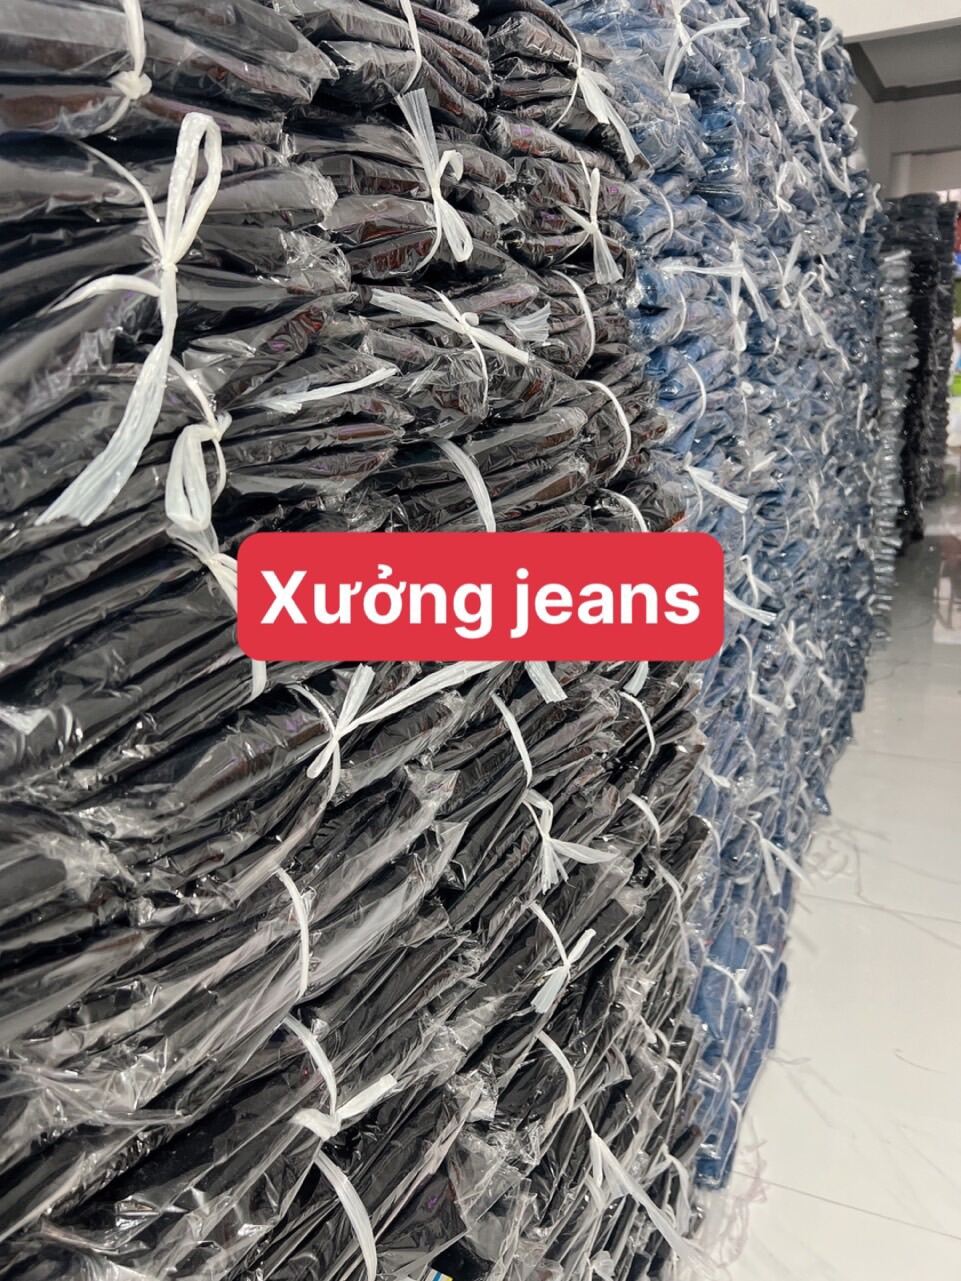 (VIDEO THẬT) - Quần Jeans nam ống rộng - Quần Jeans baggy phong cách Hàn Quốc- Quần bò dày dặn, y hình